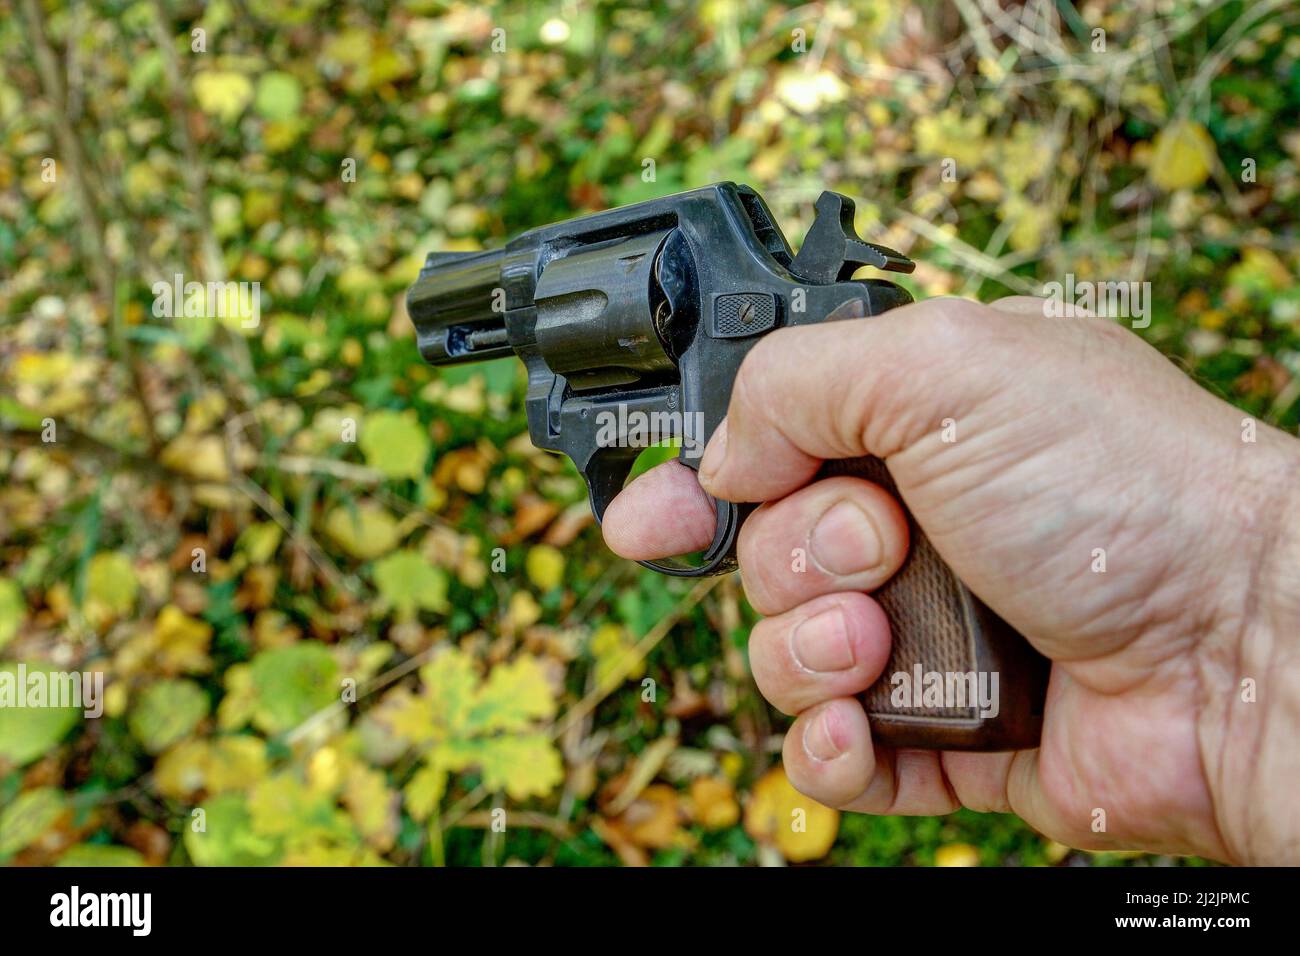 Ein Jäger hält einen großkalibrigen Revolver, während er in unwegsamem Gelände und Dickichten nach verwundeten Wildtieren sucht. Stockfoto